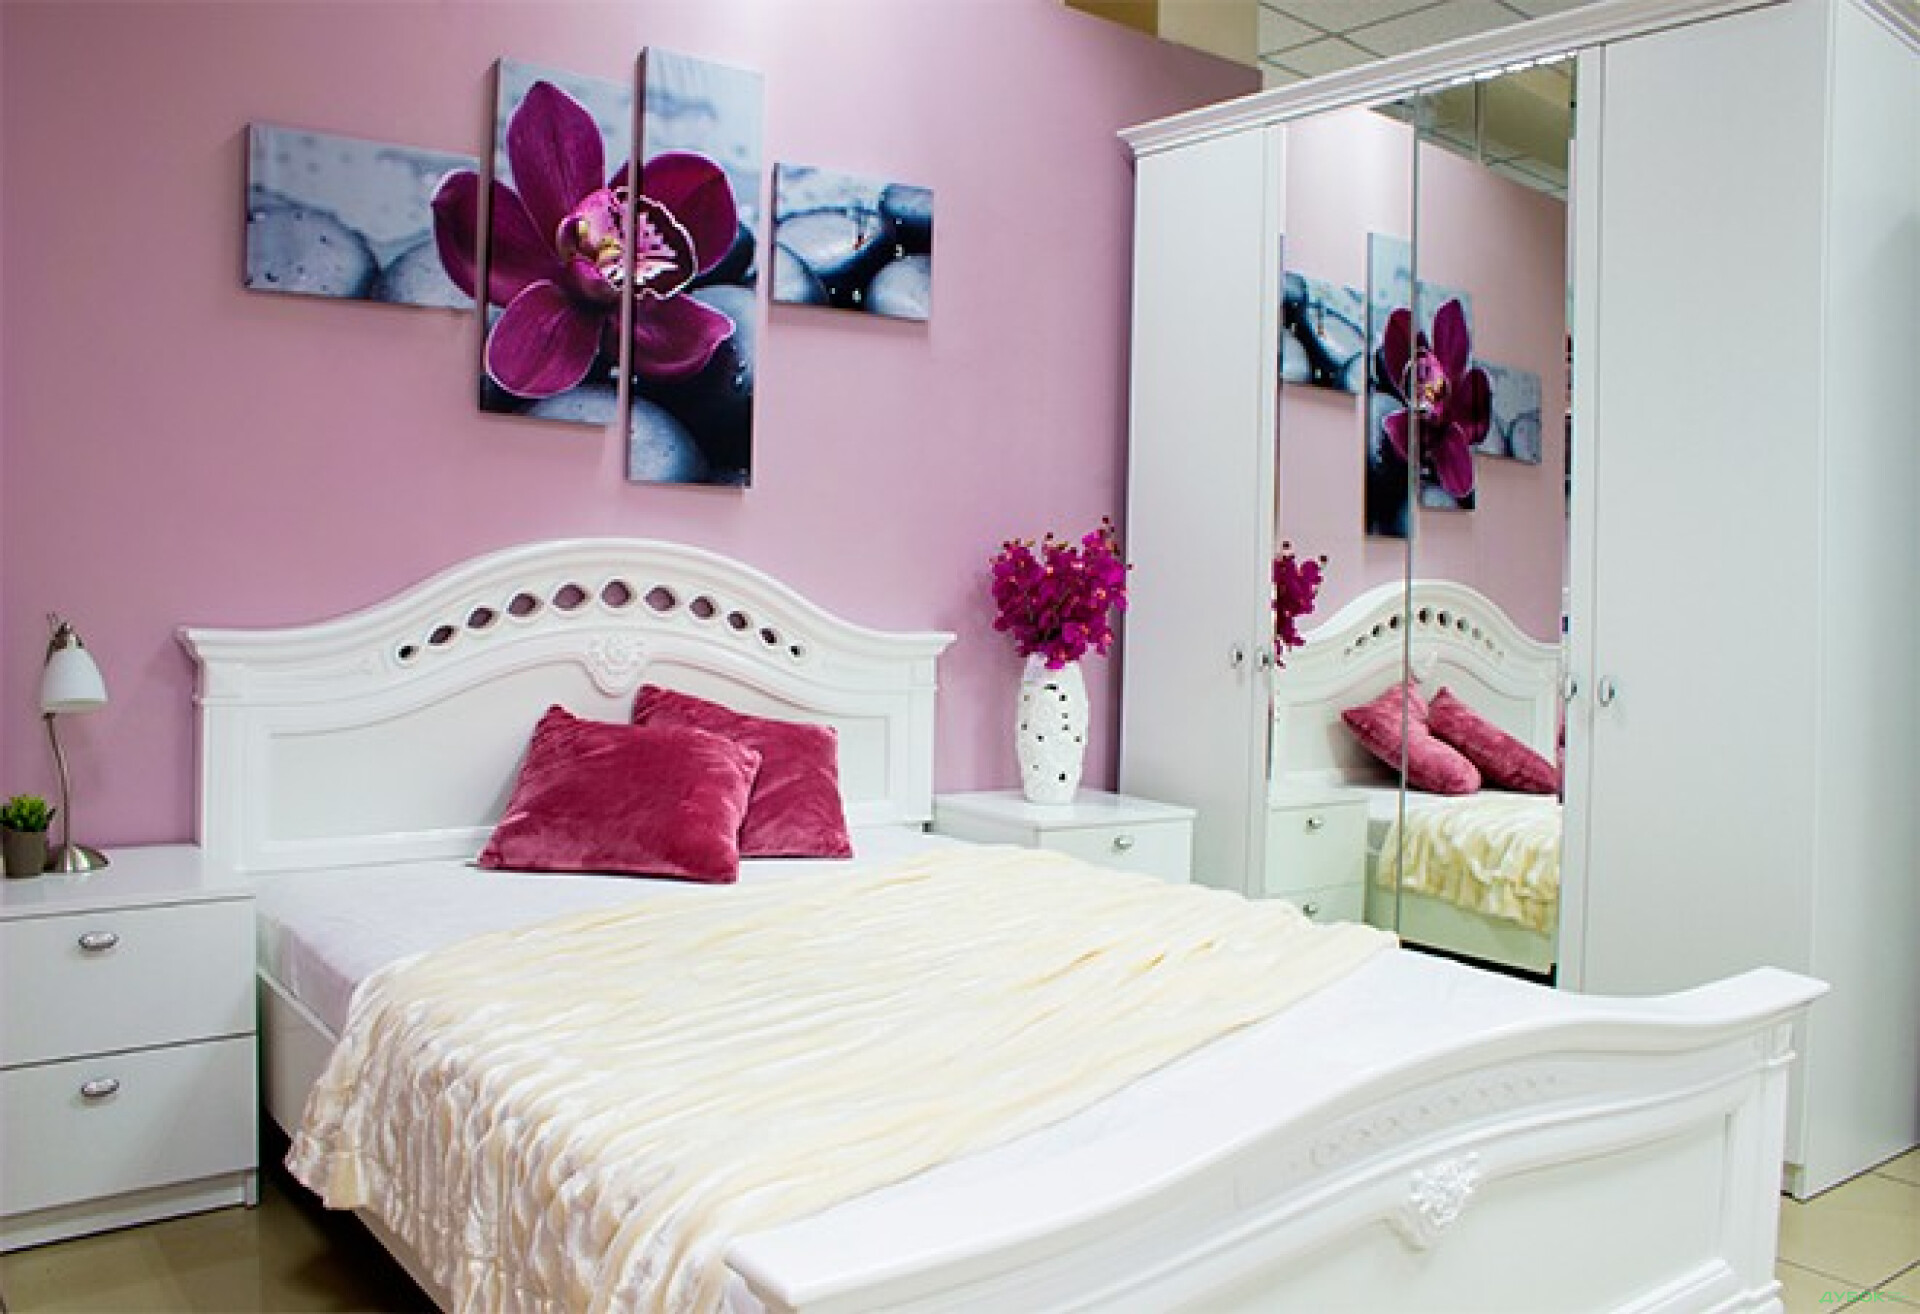 Фото 4 - Модульная спальня Рената Embawood